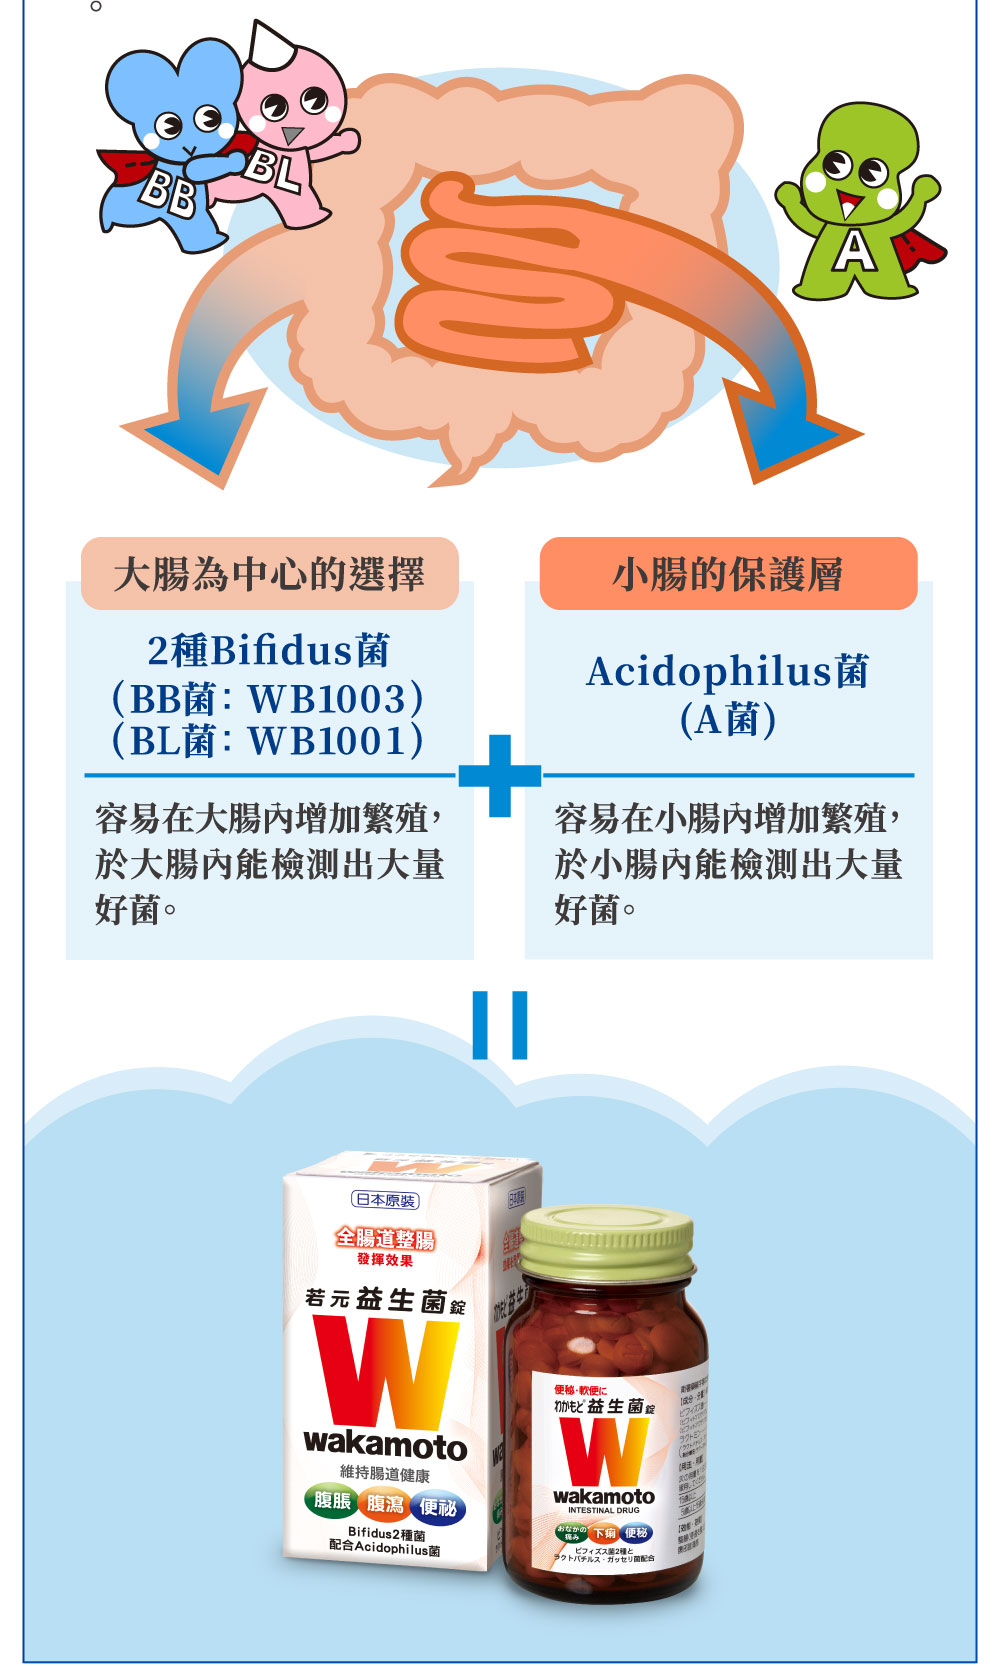 大腸為中心的選擇 2種Bifidus菌 WB1003 WB1001 小腸的保護層 Acidophilus菌 A菌